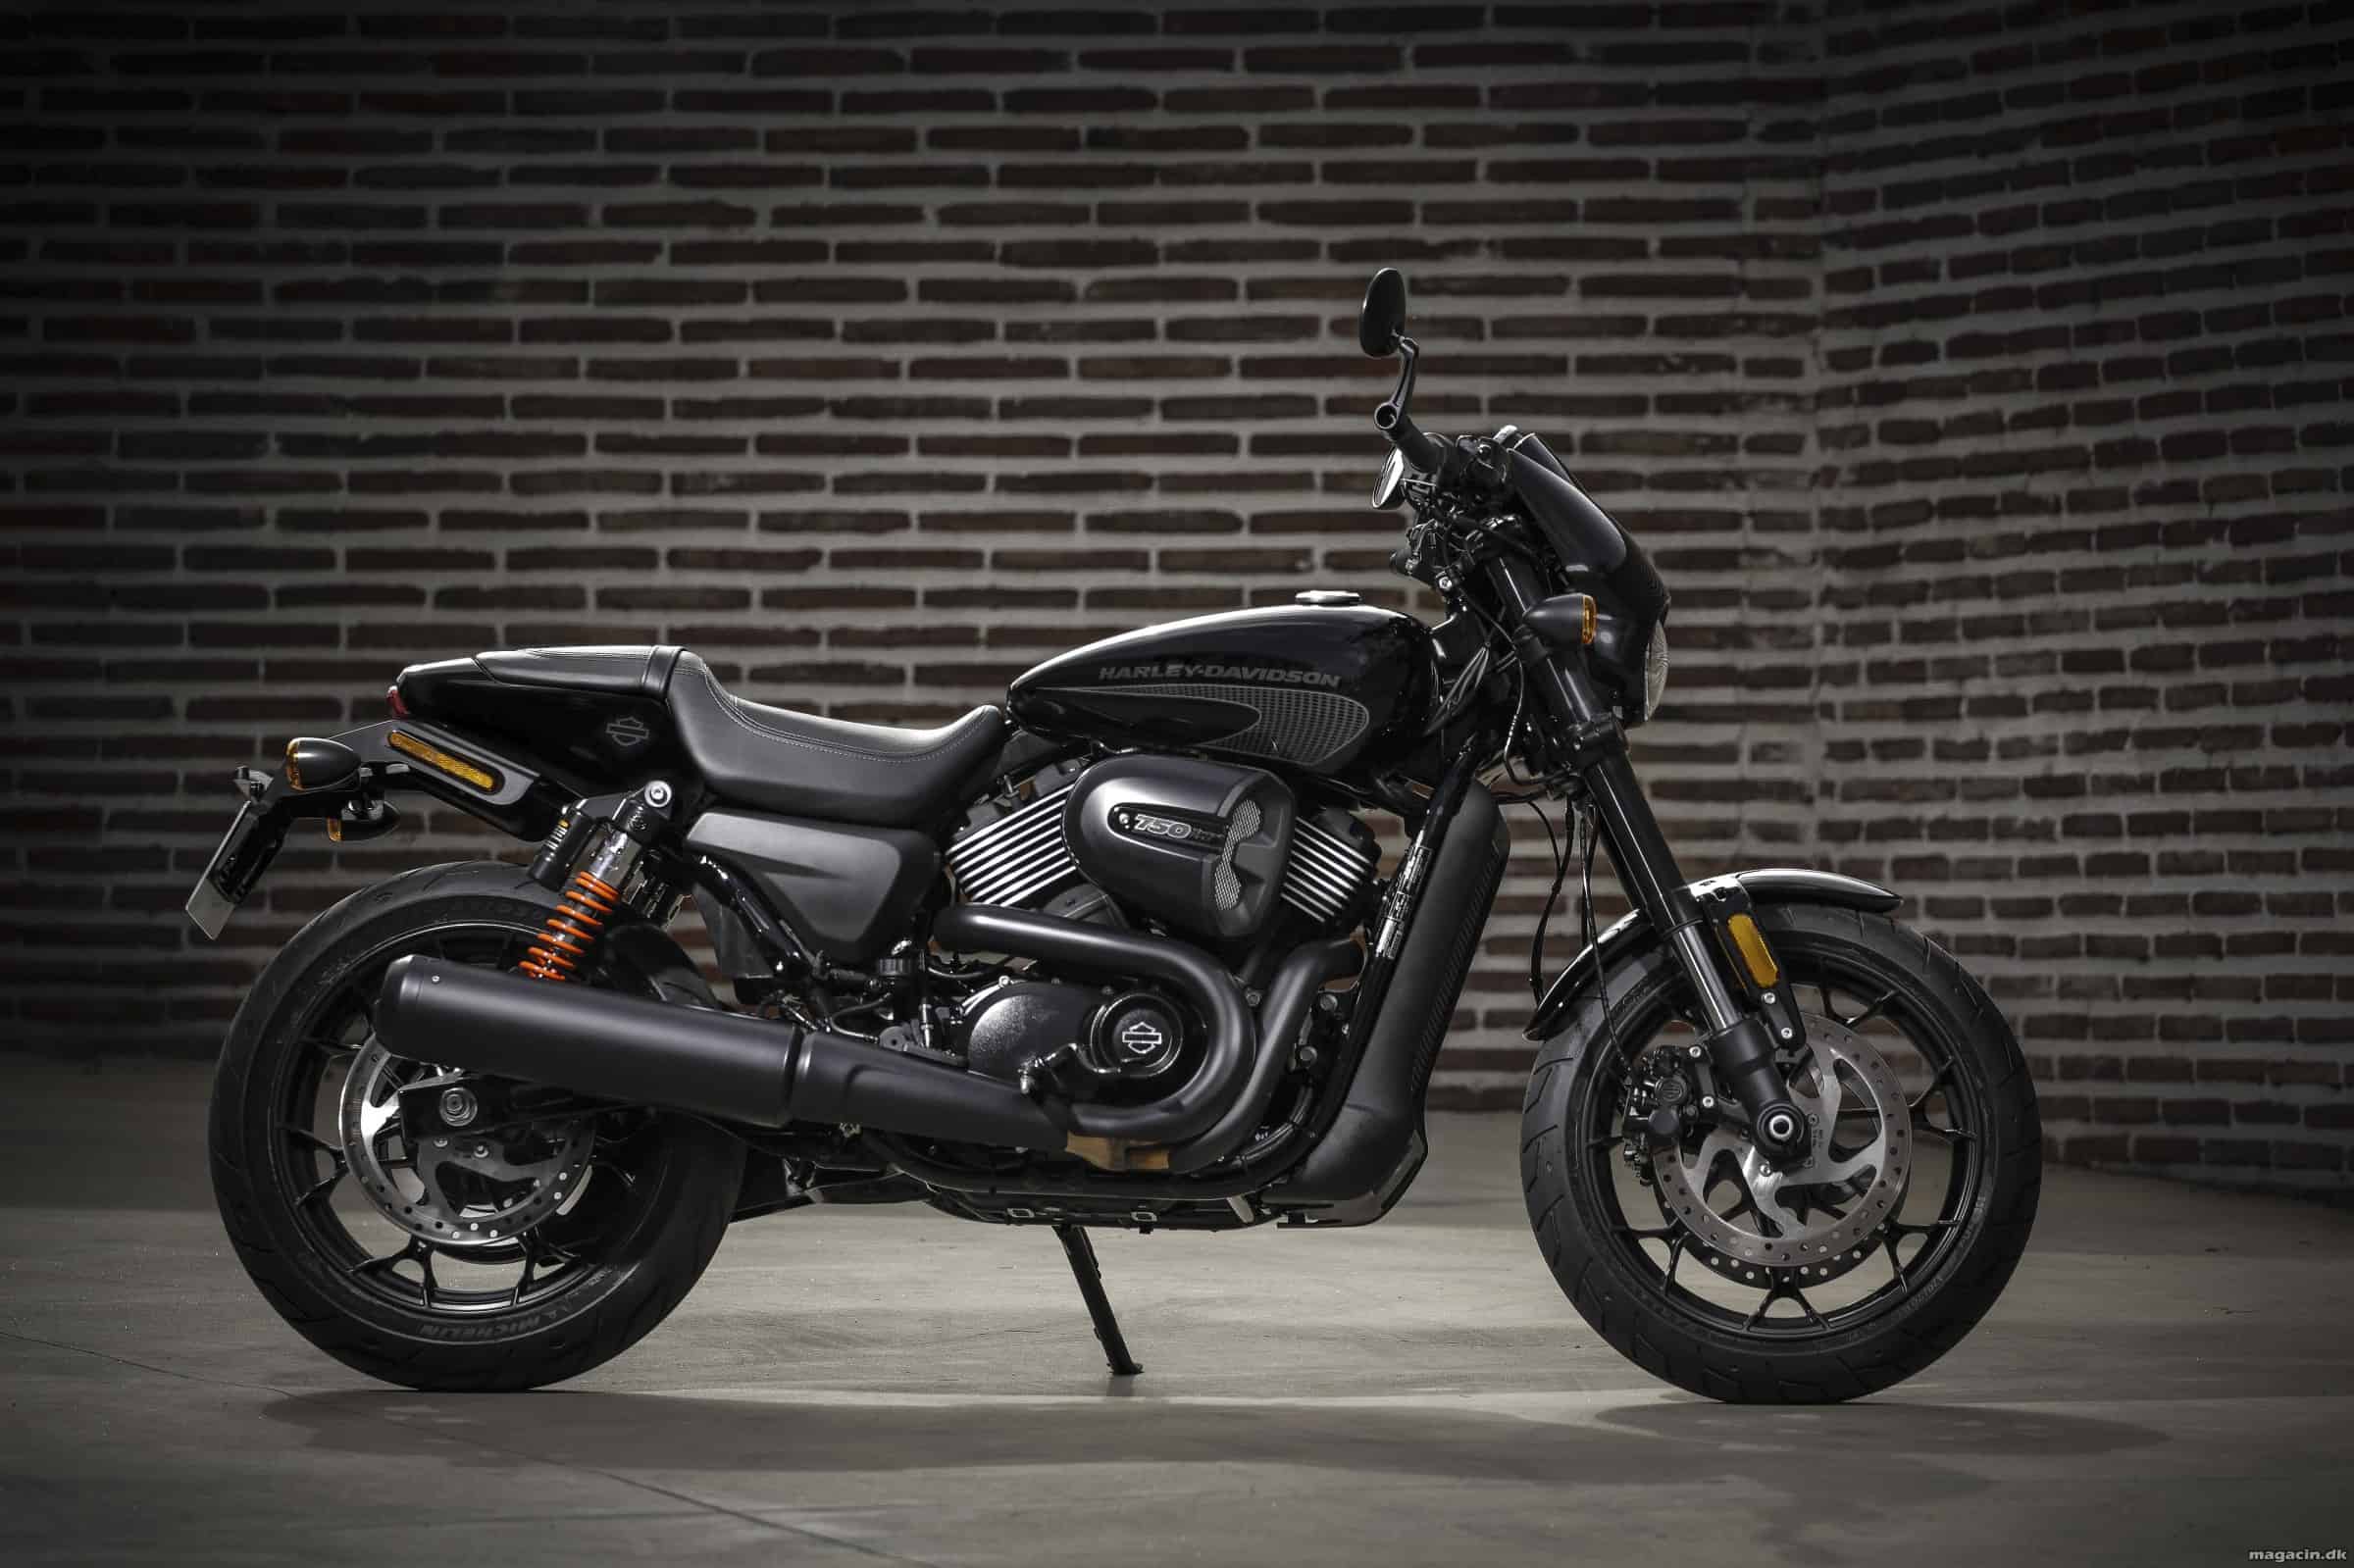 Prøvekørt: 2017 Harley-Davidson 750 Street Rod – Fræk gadedreng